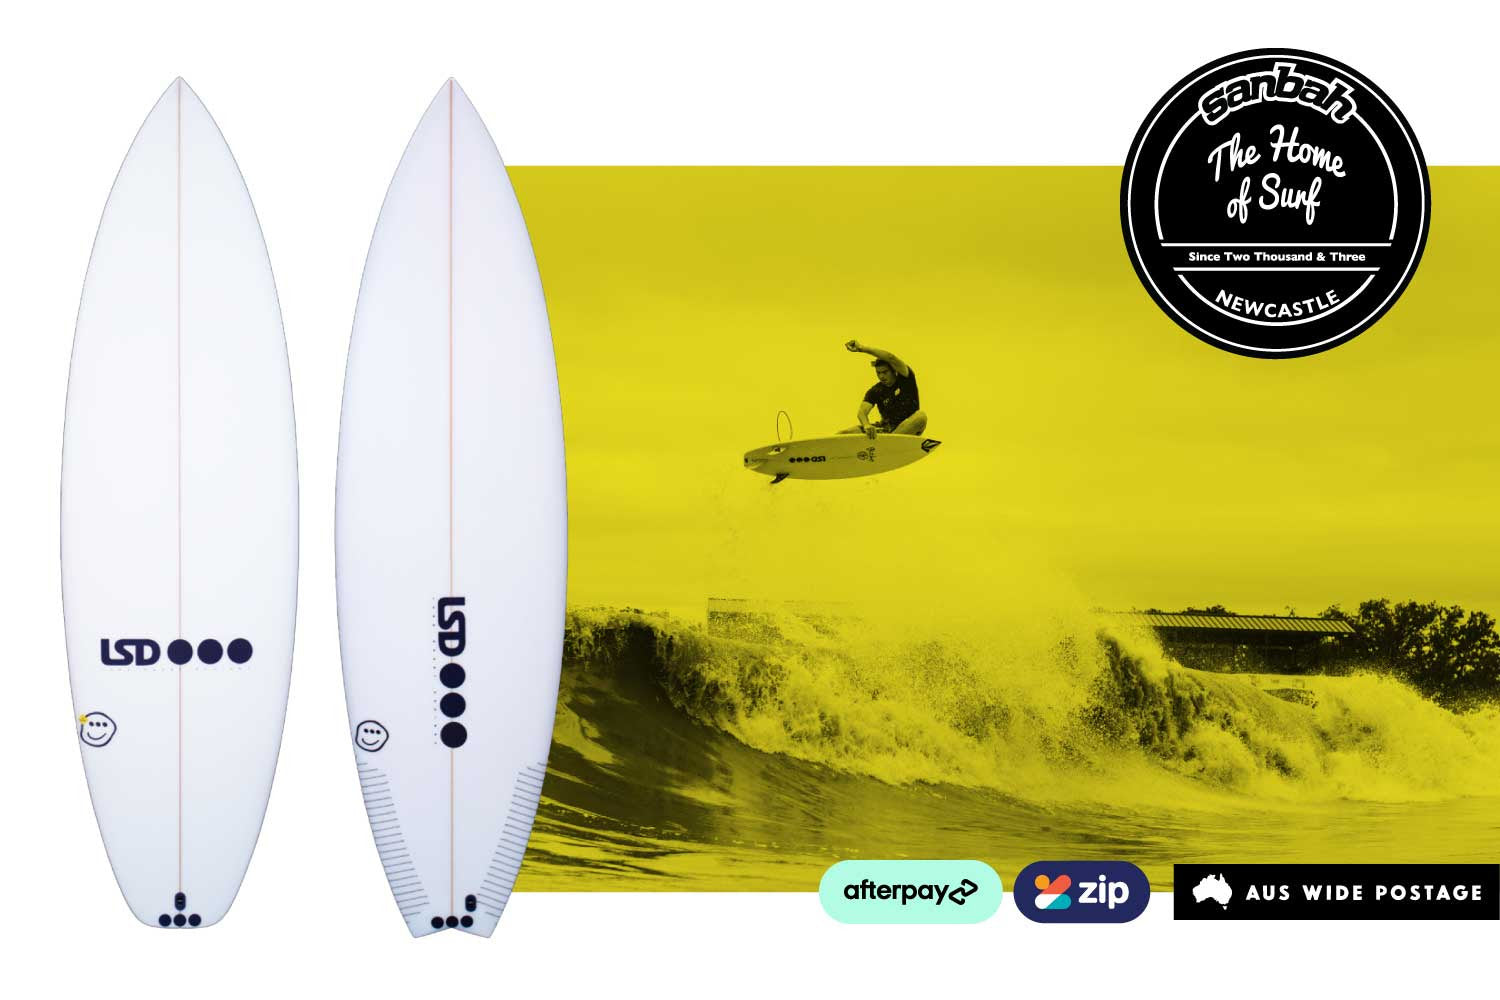 LSD Surfboards have landed at Sanbah. Buy online or in-store now! – Sanbah  Australia